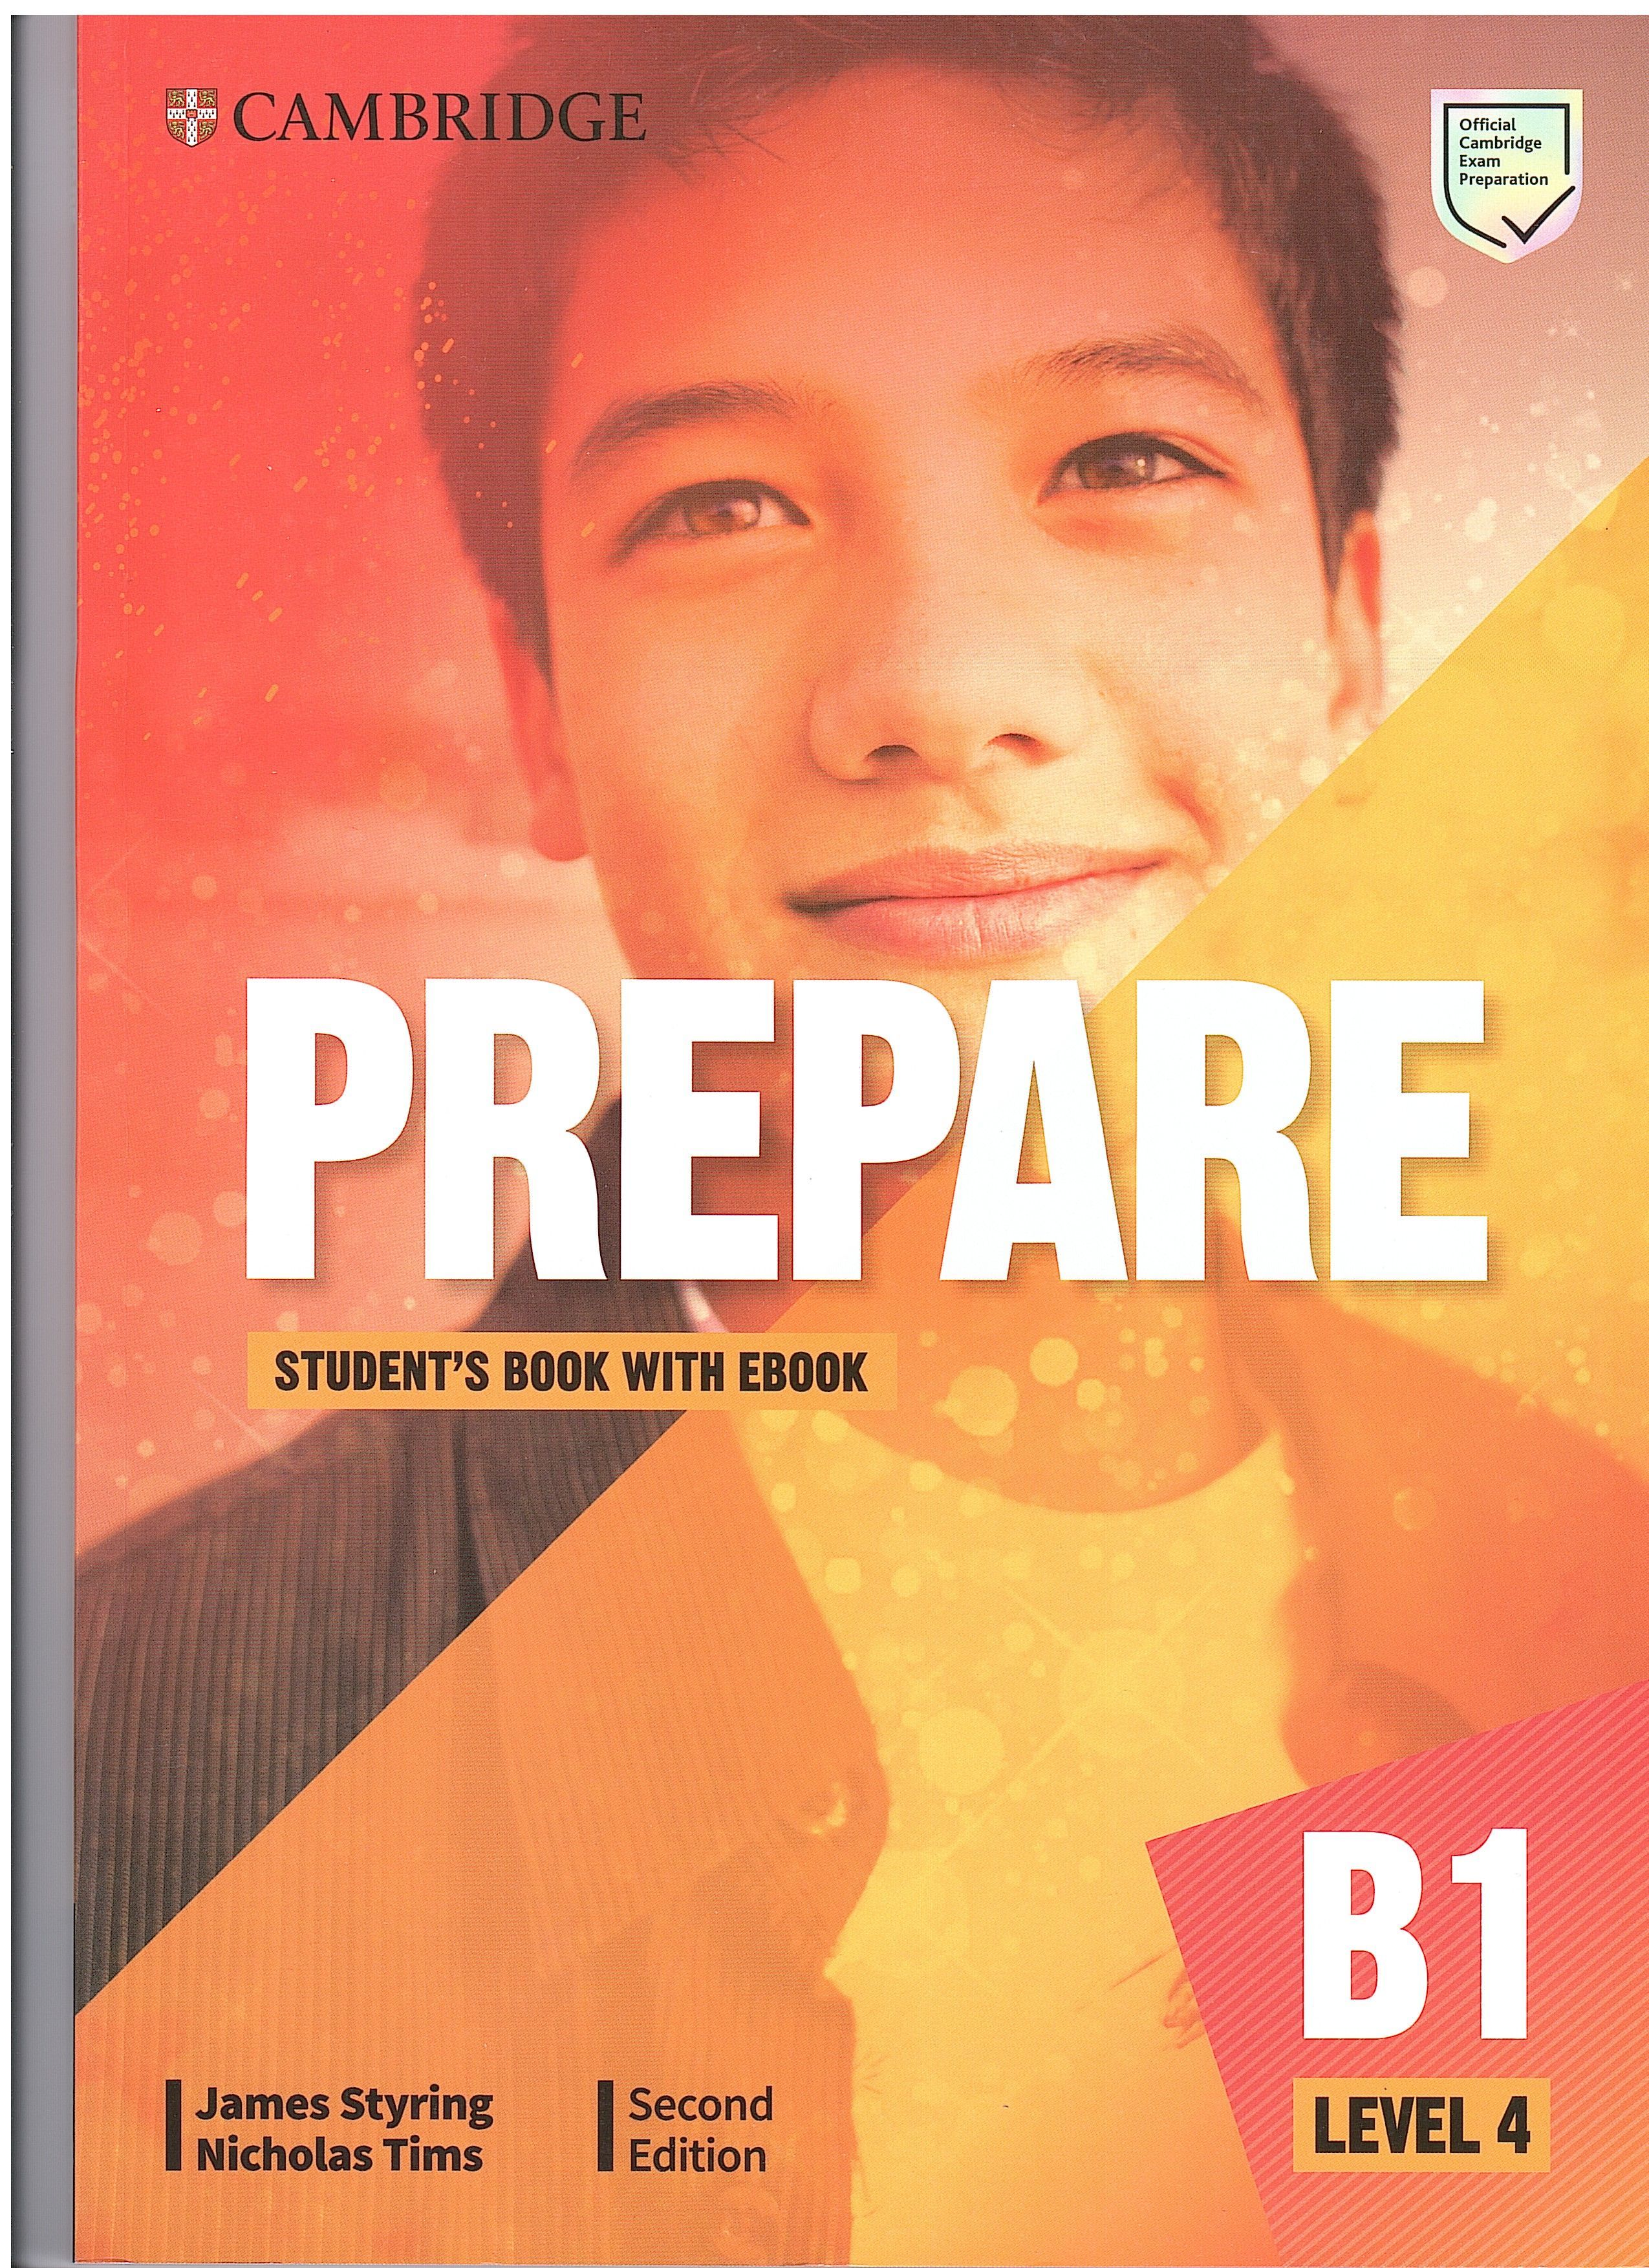 Prepare workbook. Cambridge prepare students book b1 Level 4. Cambridge prepare b1 Level 4 second Edition. Prepare second Edition Level 1. Prepare student's book Cambridge a1 Level 1.